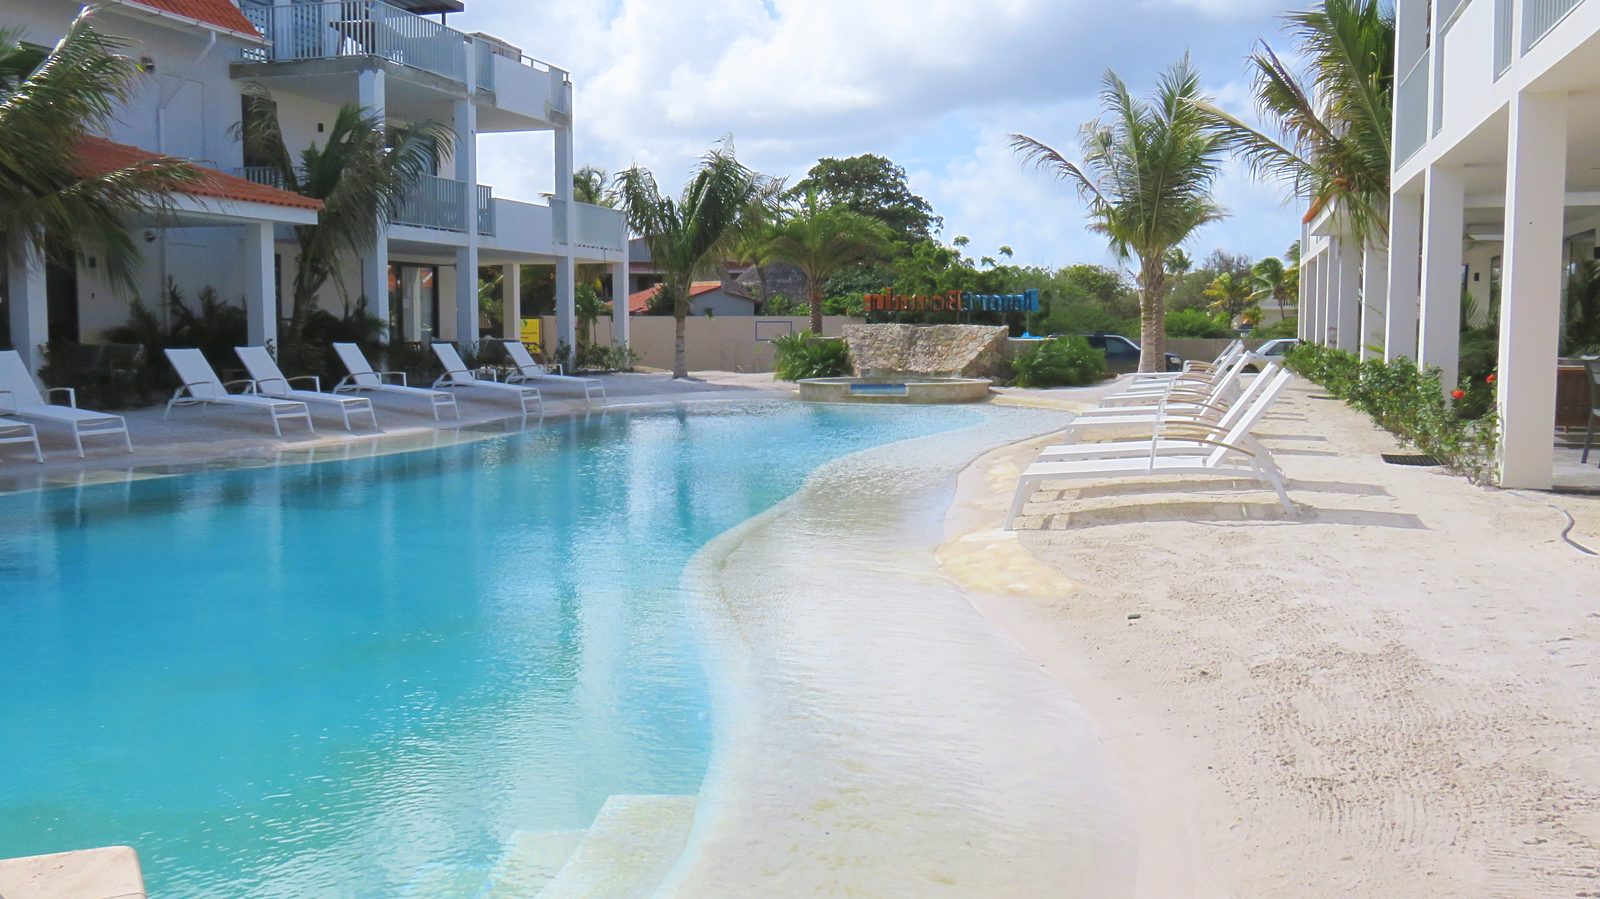 Maak kennis met het zwembad op Resort Bonaire. Aan dit strandbad kunt u relaxen en genieten van het weer. De kids kunnen zich ook goed vermaken.